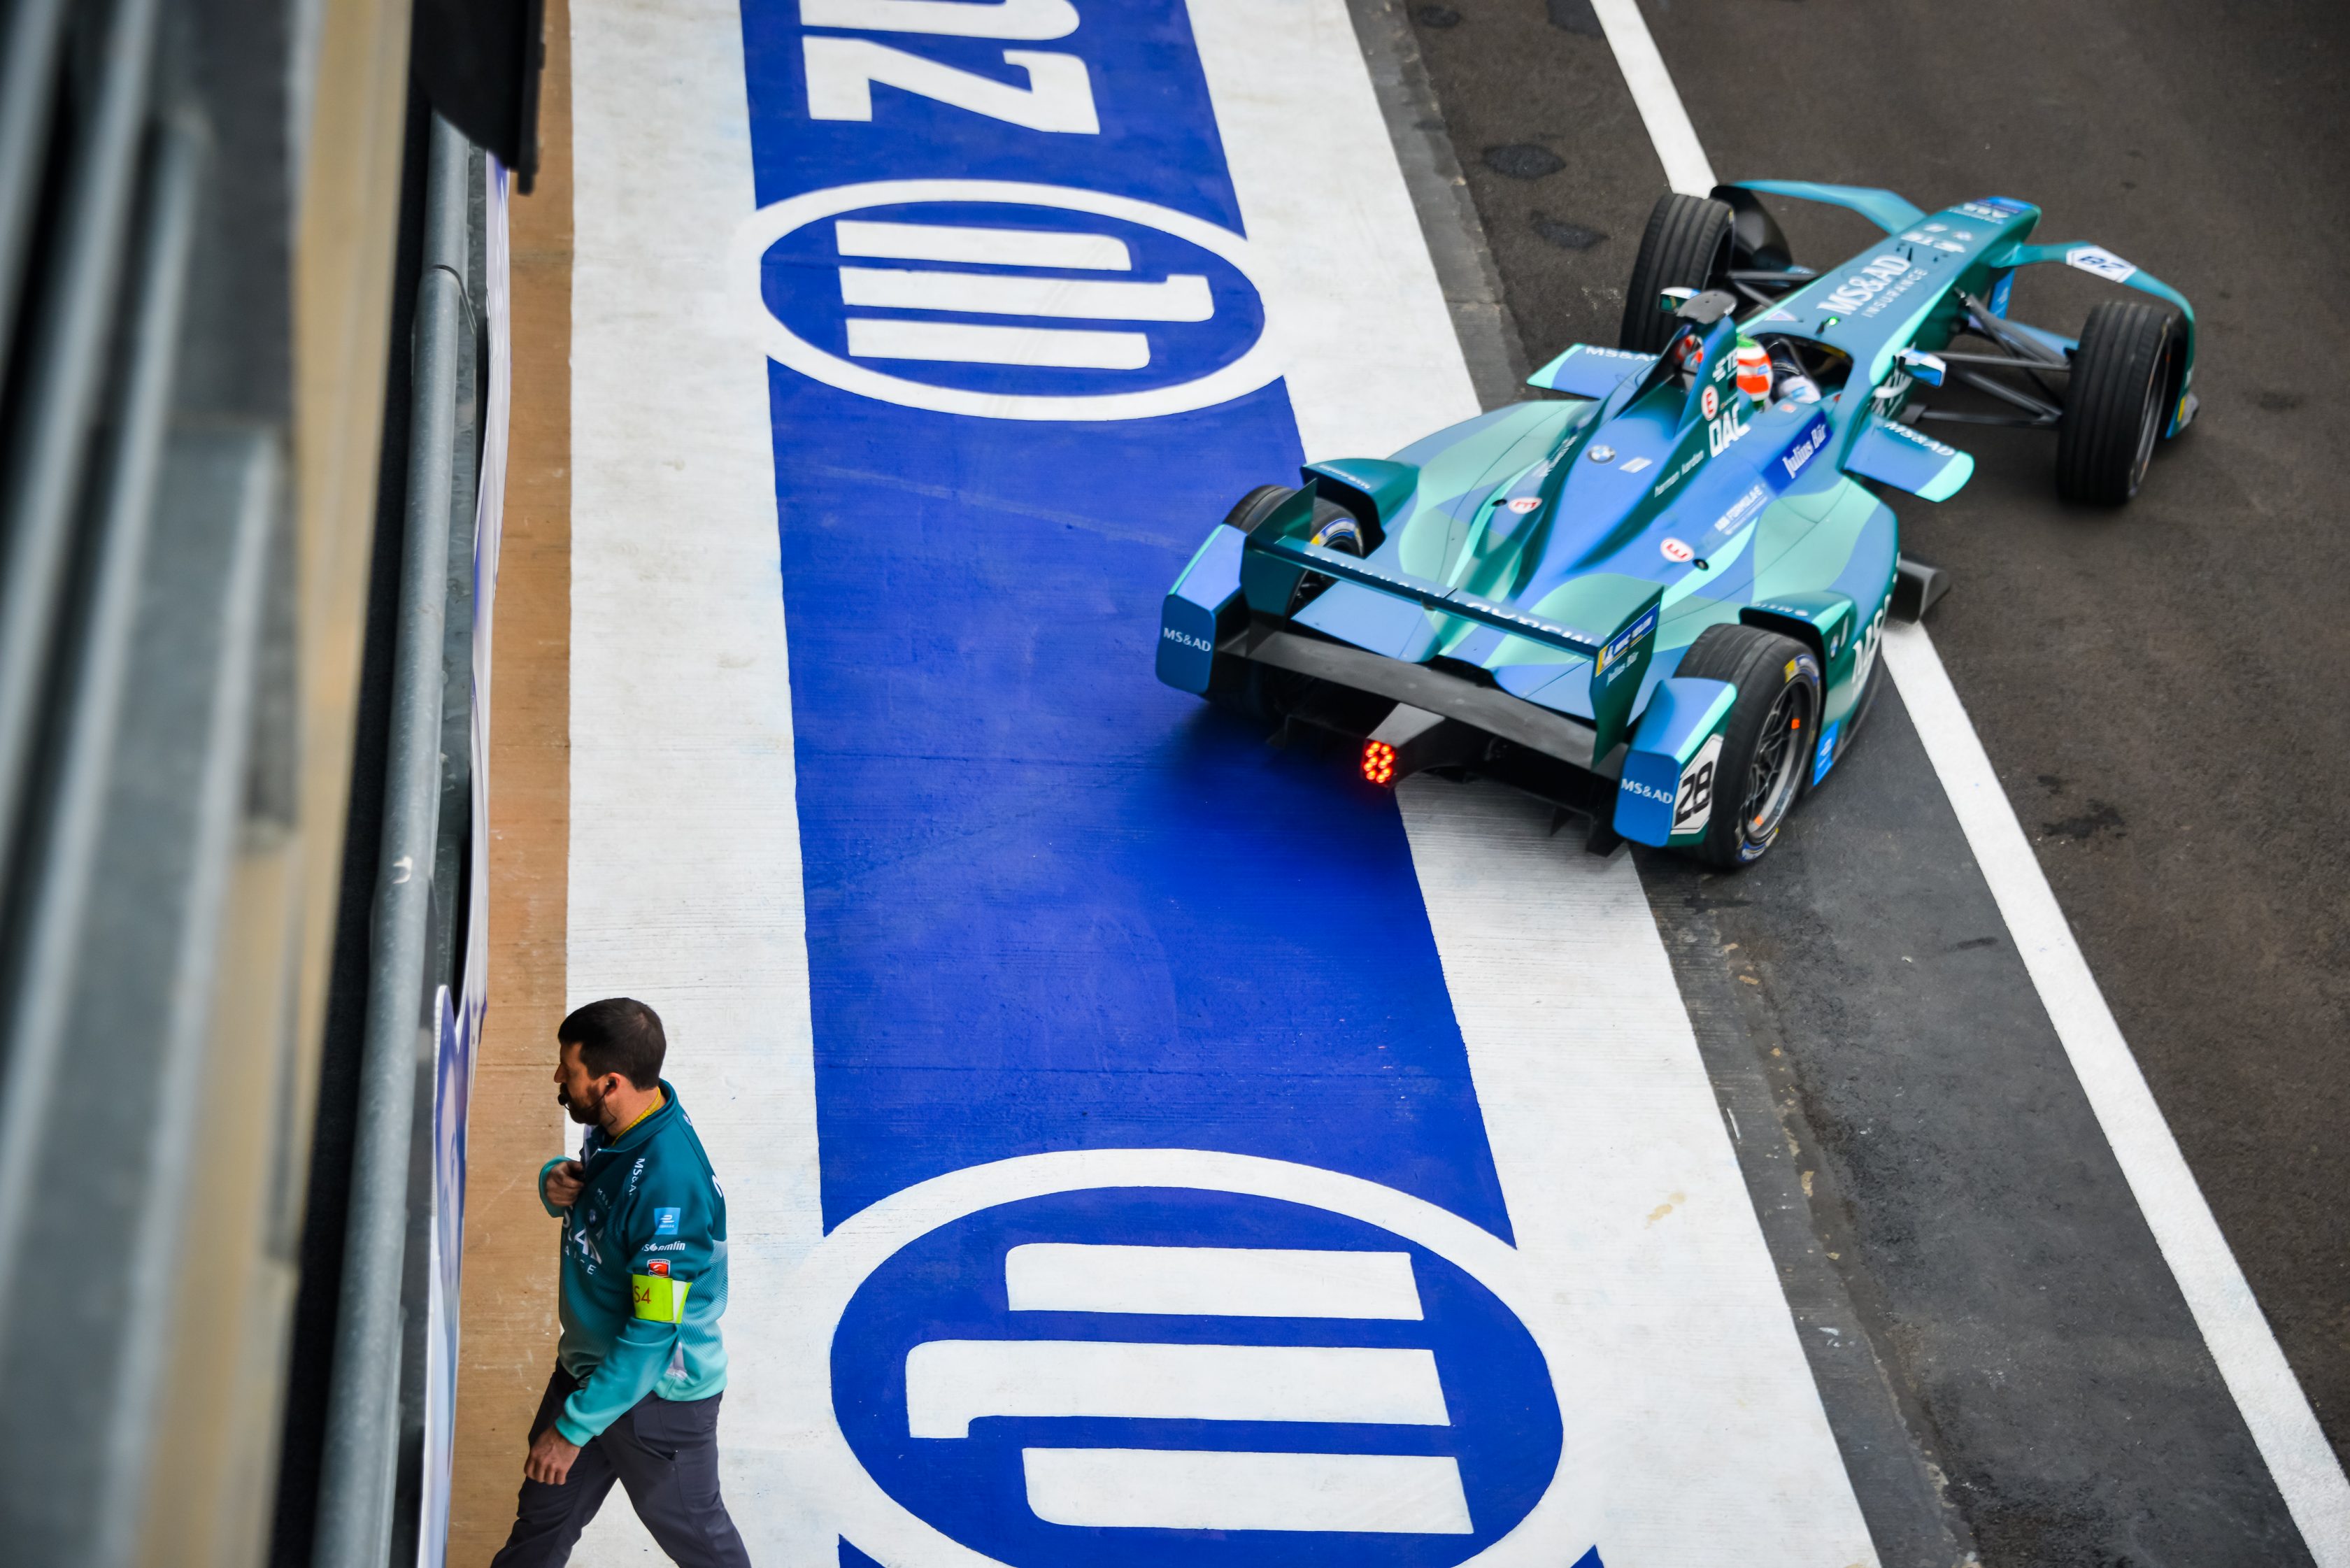 Logo de Allianz Seguros decorando una pista de automovilismo, mientras se desarrolla una carrera de Fórmula E